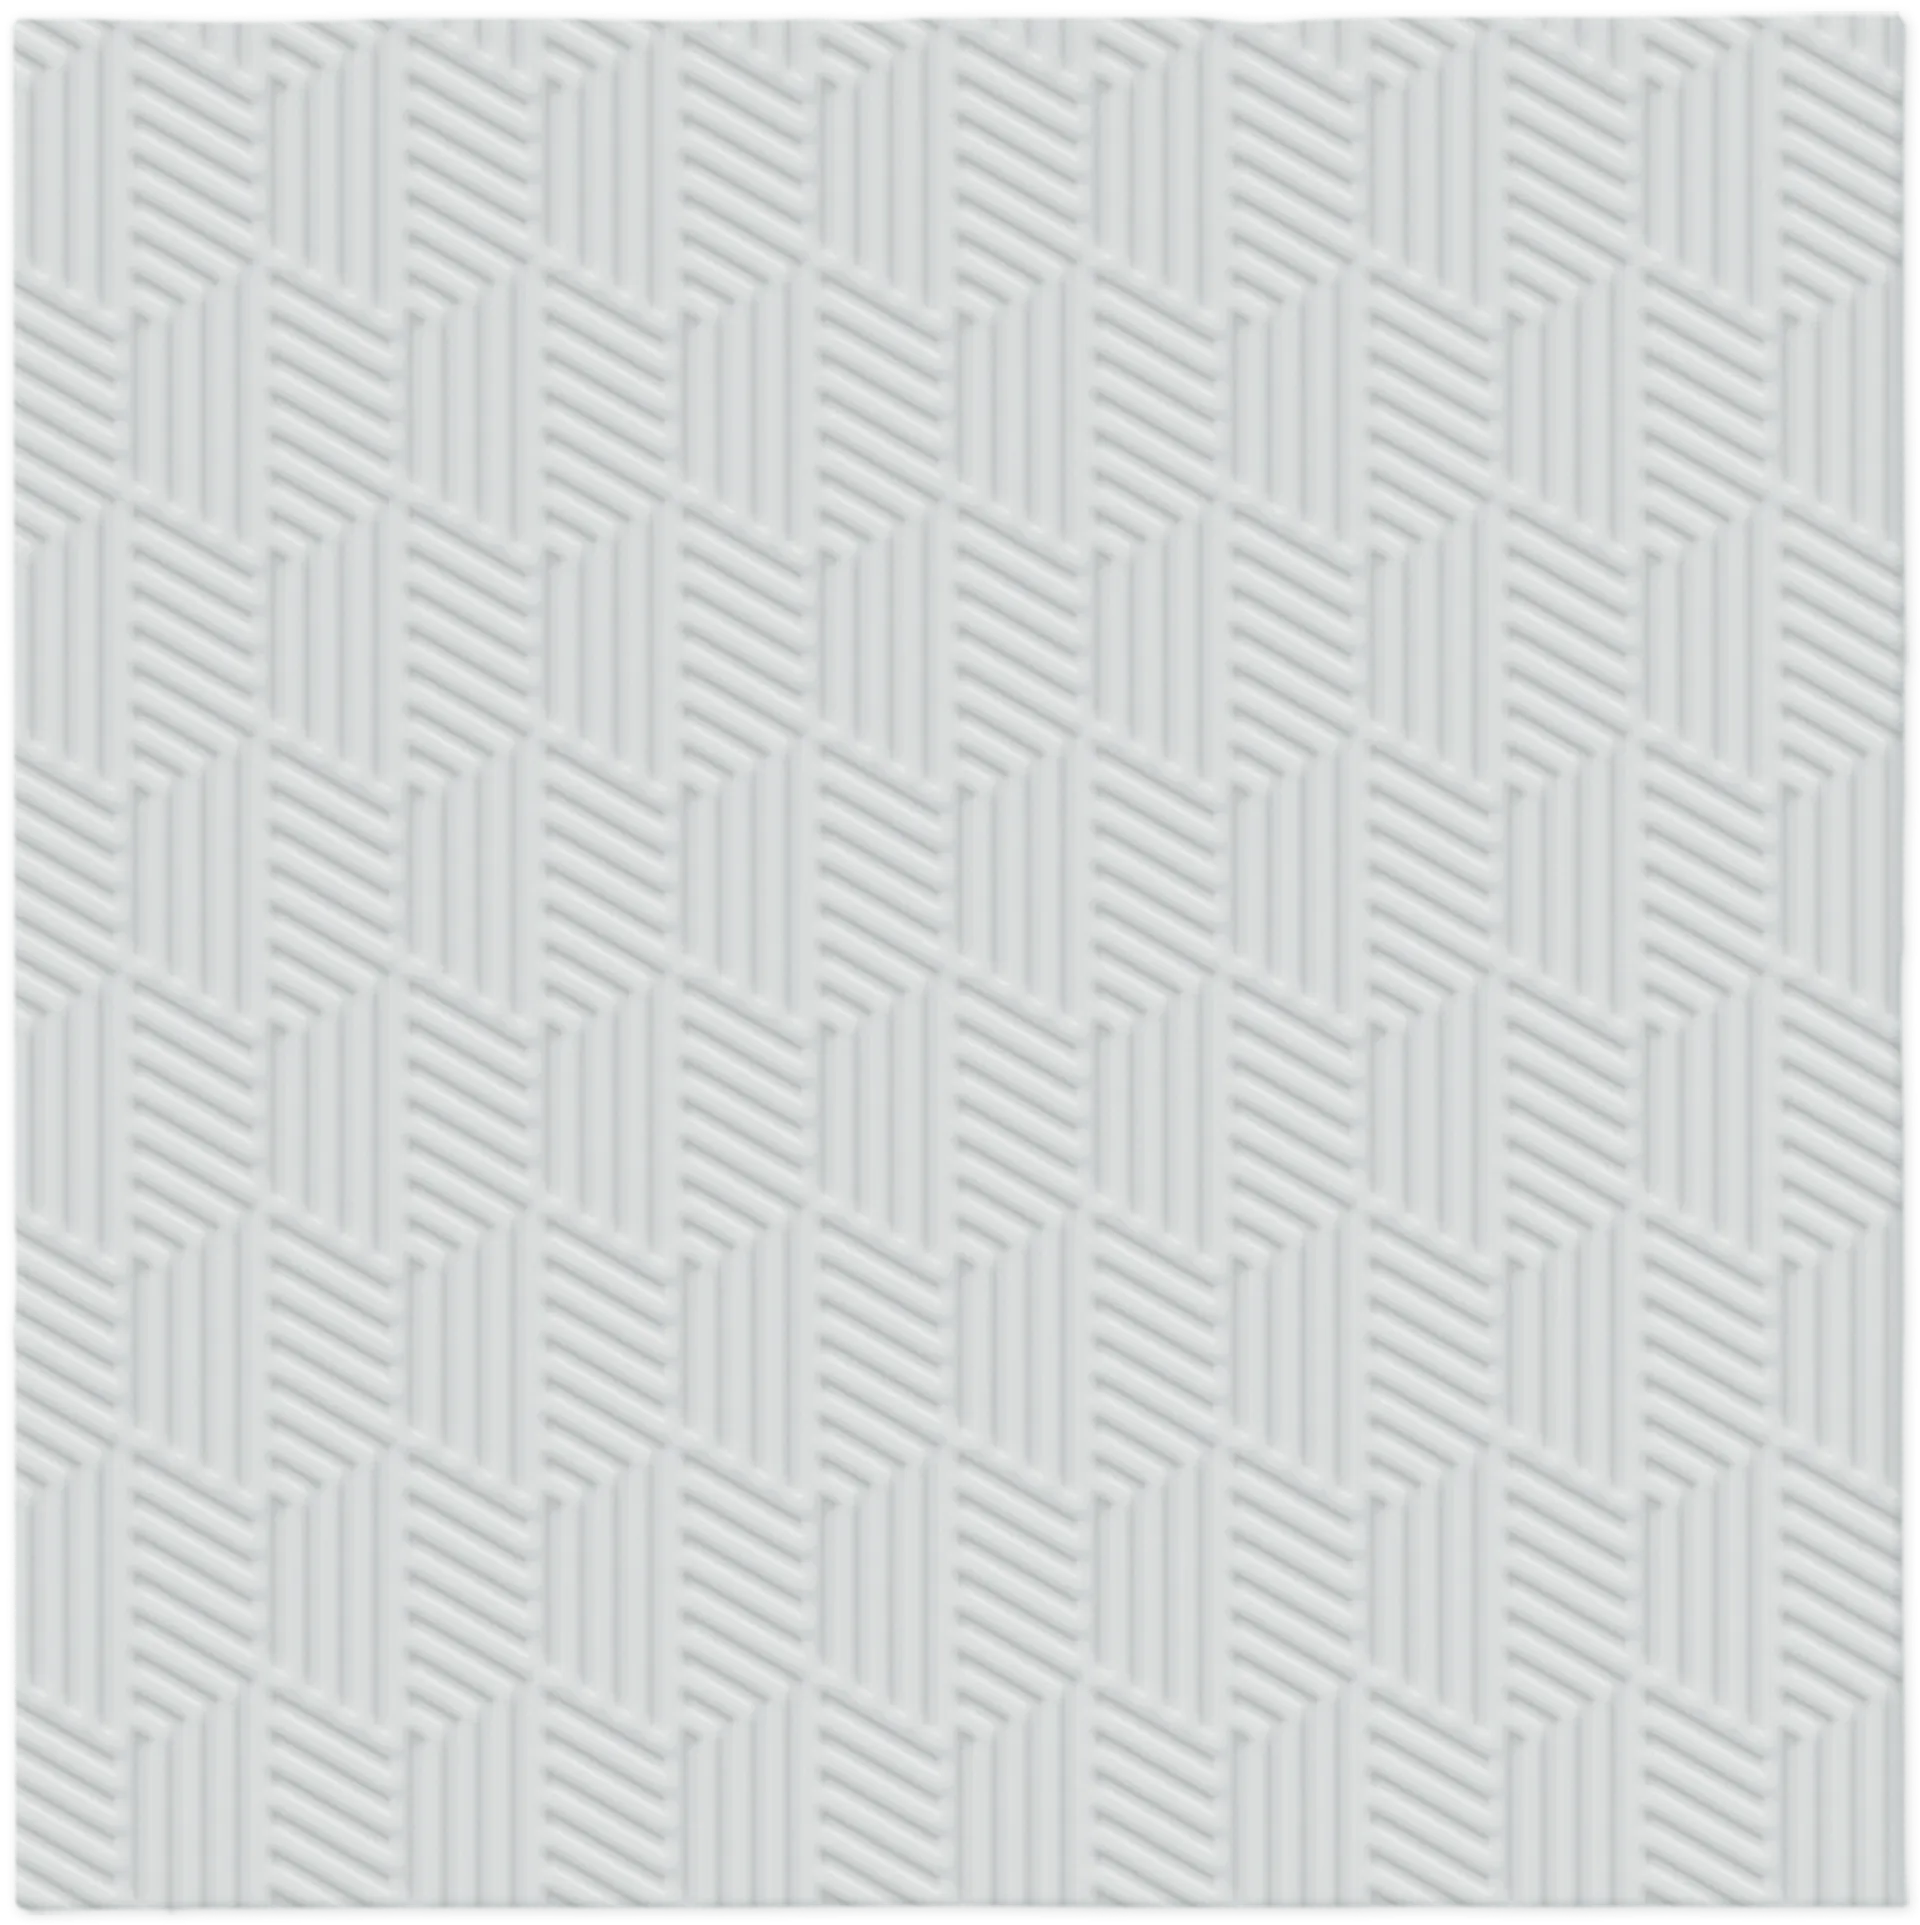 Lautasliina kohokuvio hopeanvärinen 25 x 25 cm 20 kpl